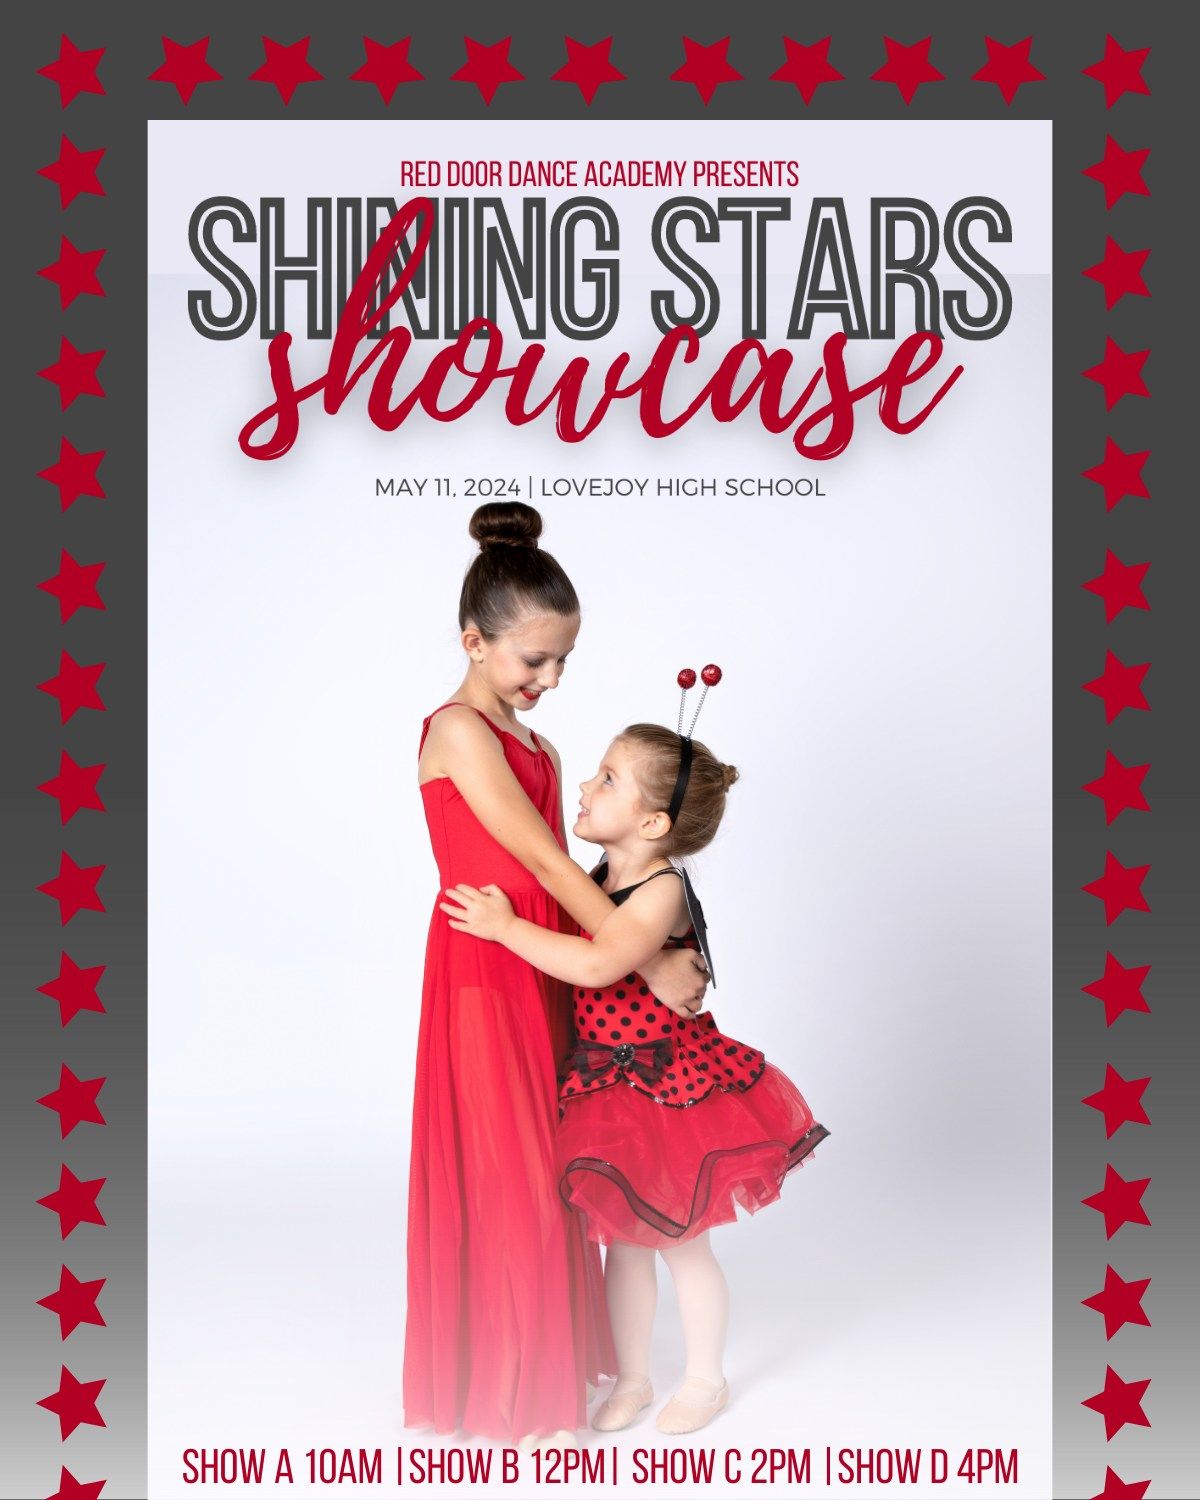 Shining Stars Showcases- RDDA